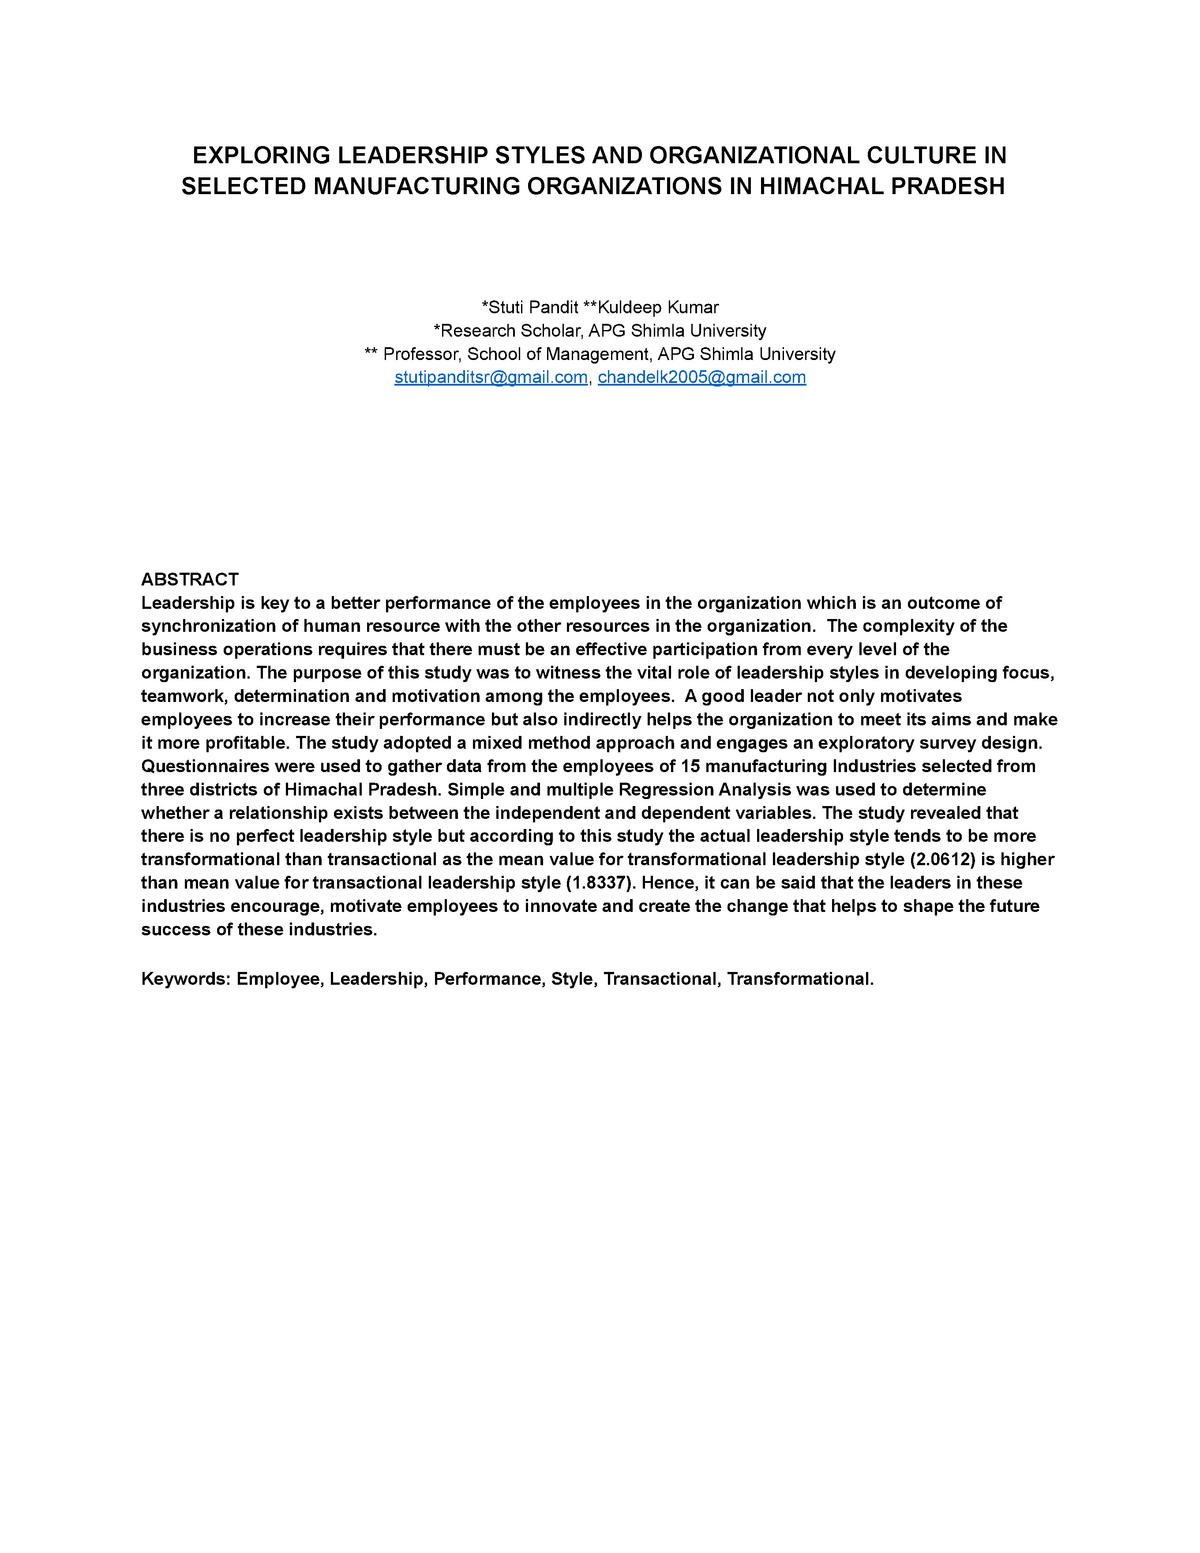 organizational culture research paper